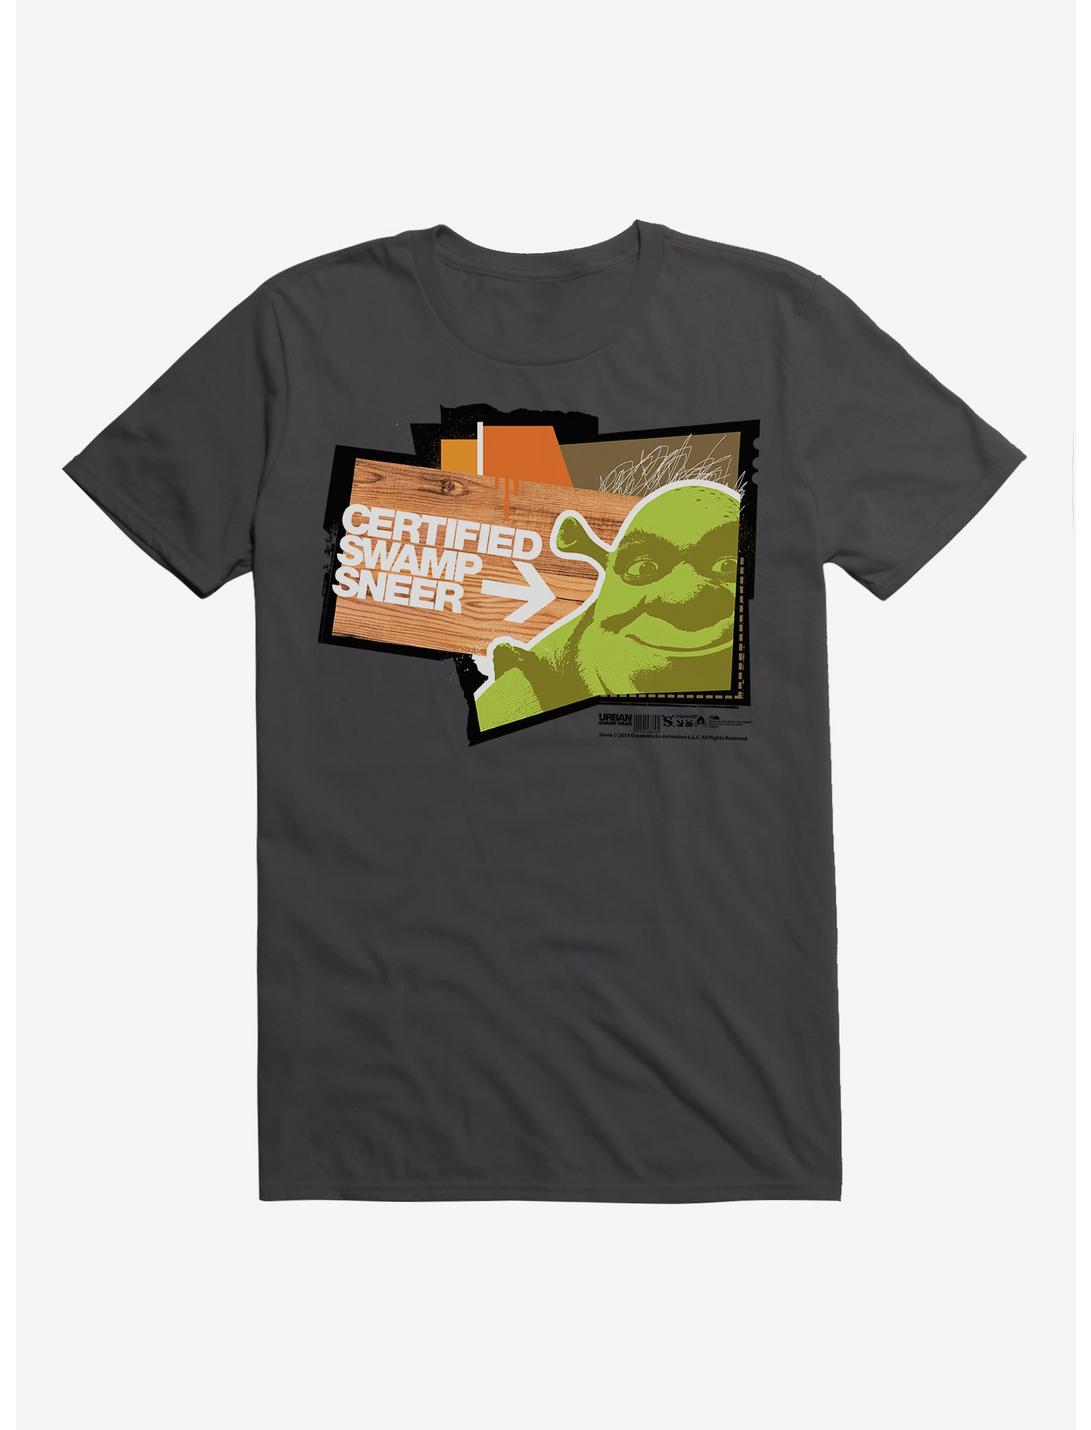 Shrek Certified Swamp Sneer T-Shirt, , hi-res